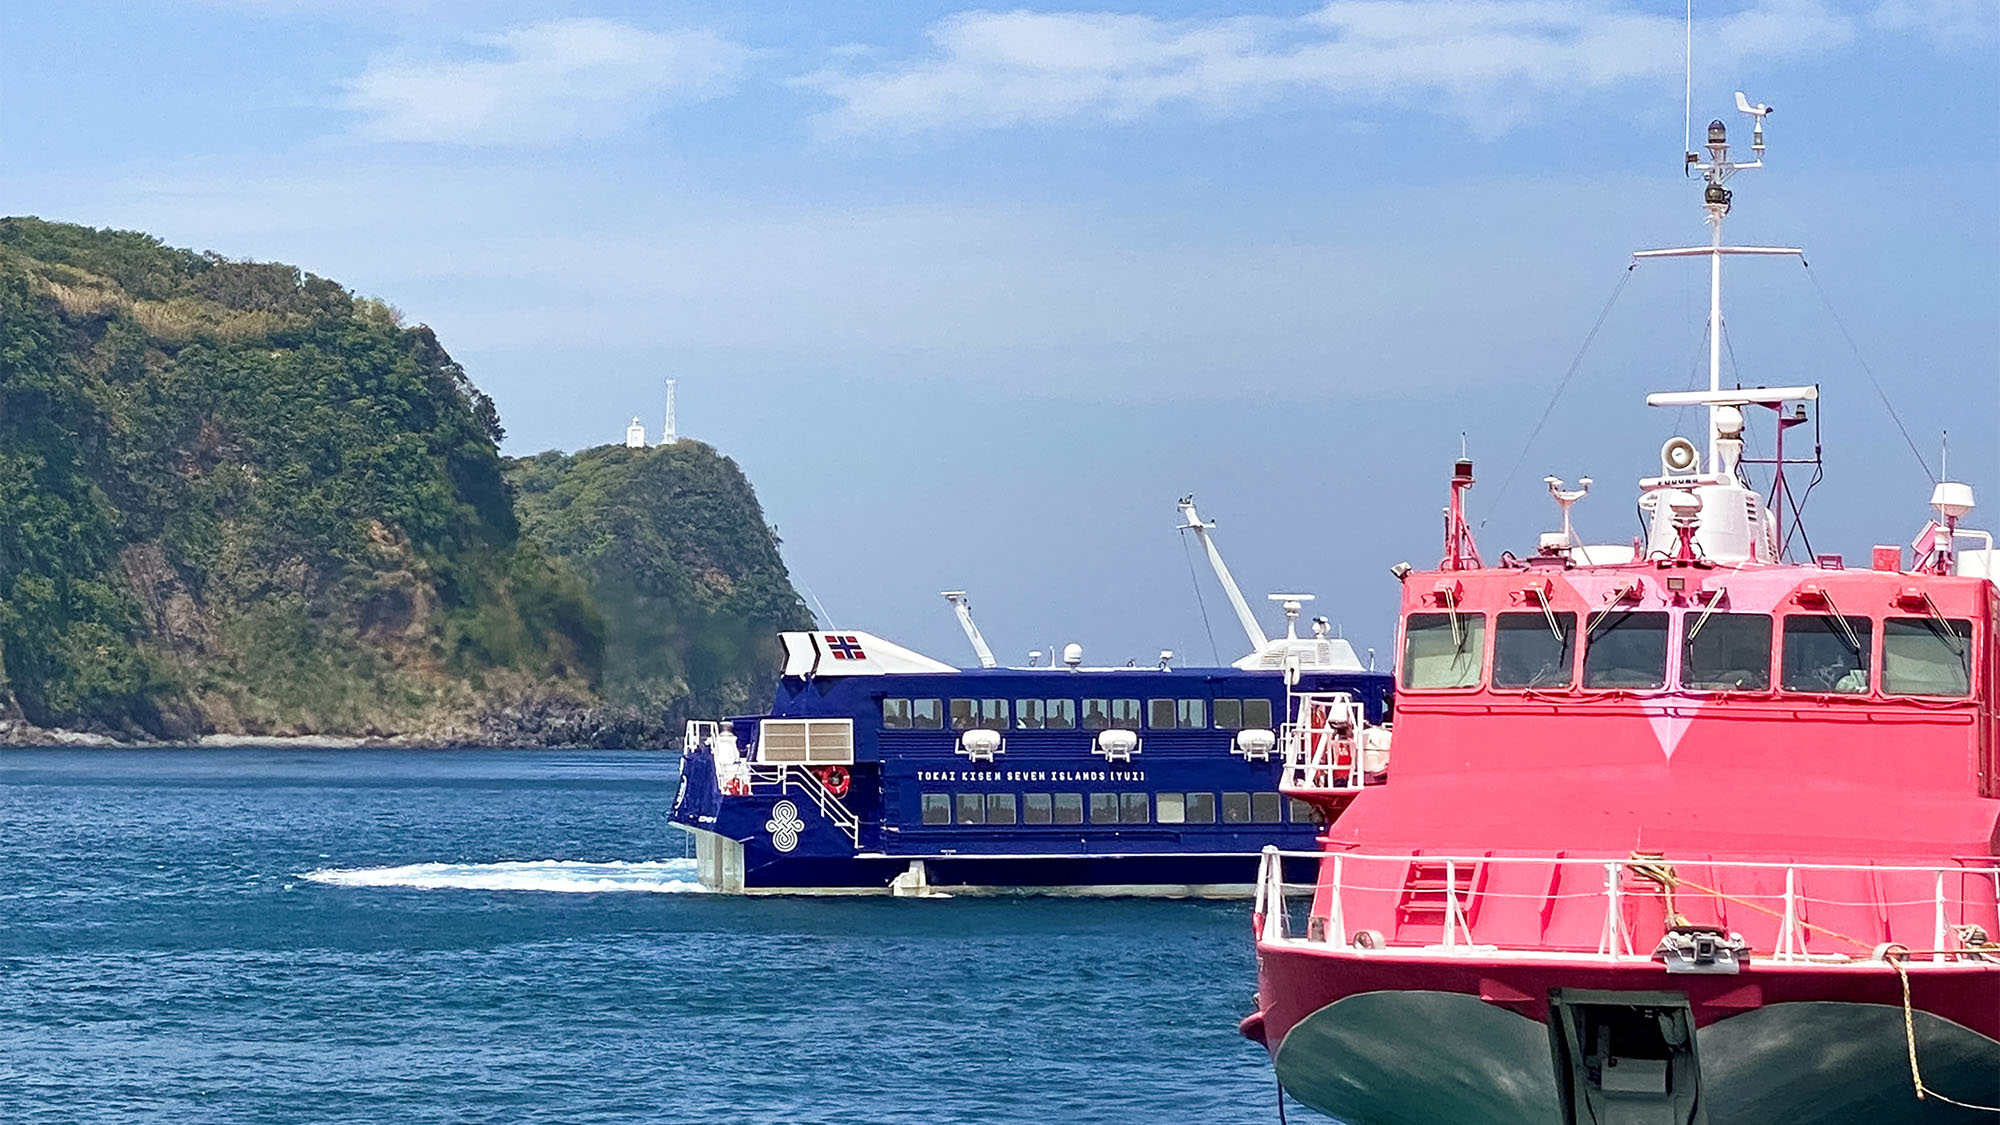 ・東京・竹芝桟橋から高速船で最速1時間45分。気軽な島旅に